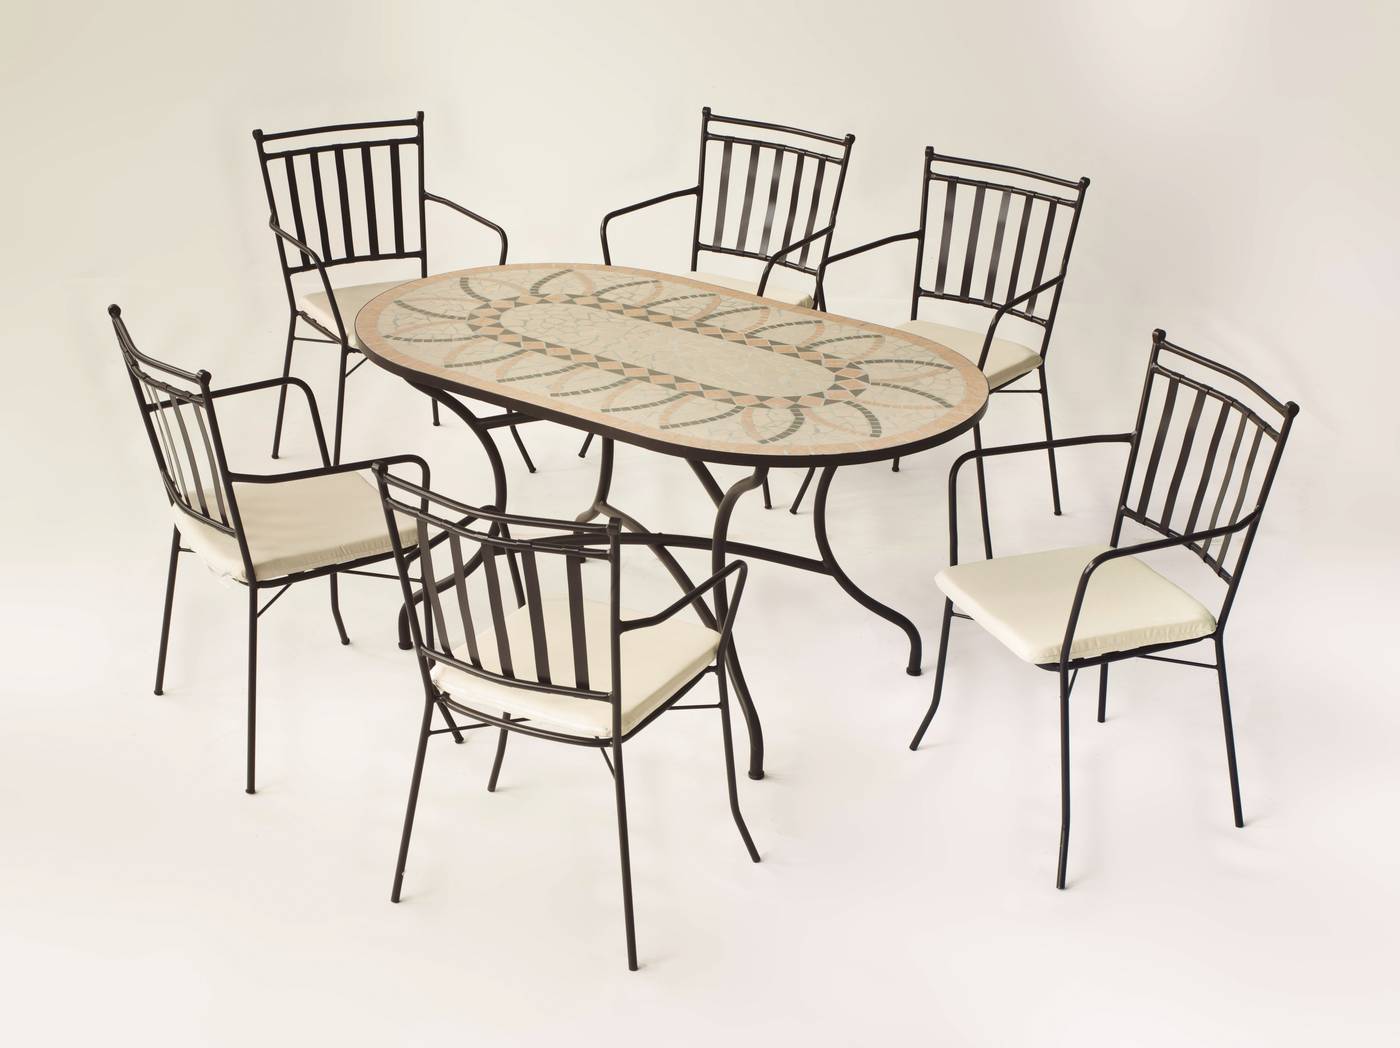 Conjunto Mosaico Bora-Shifa - Conjunto de forja color bronce: mesa con tablero mosaico de 150 cm + 6 sillones con cojines asiento.